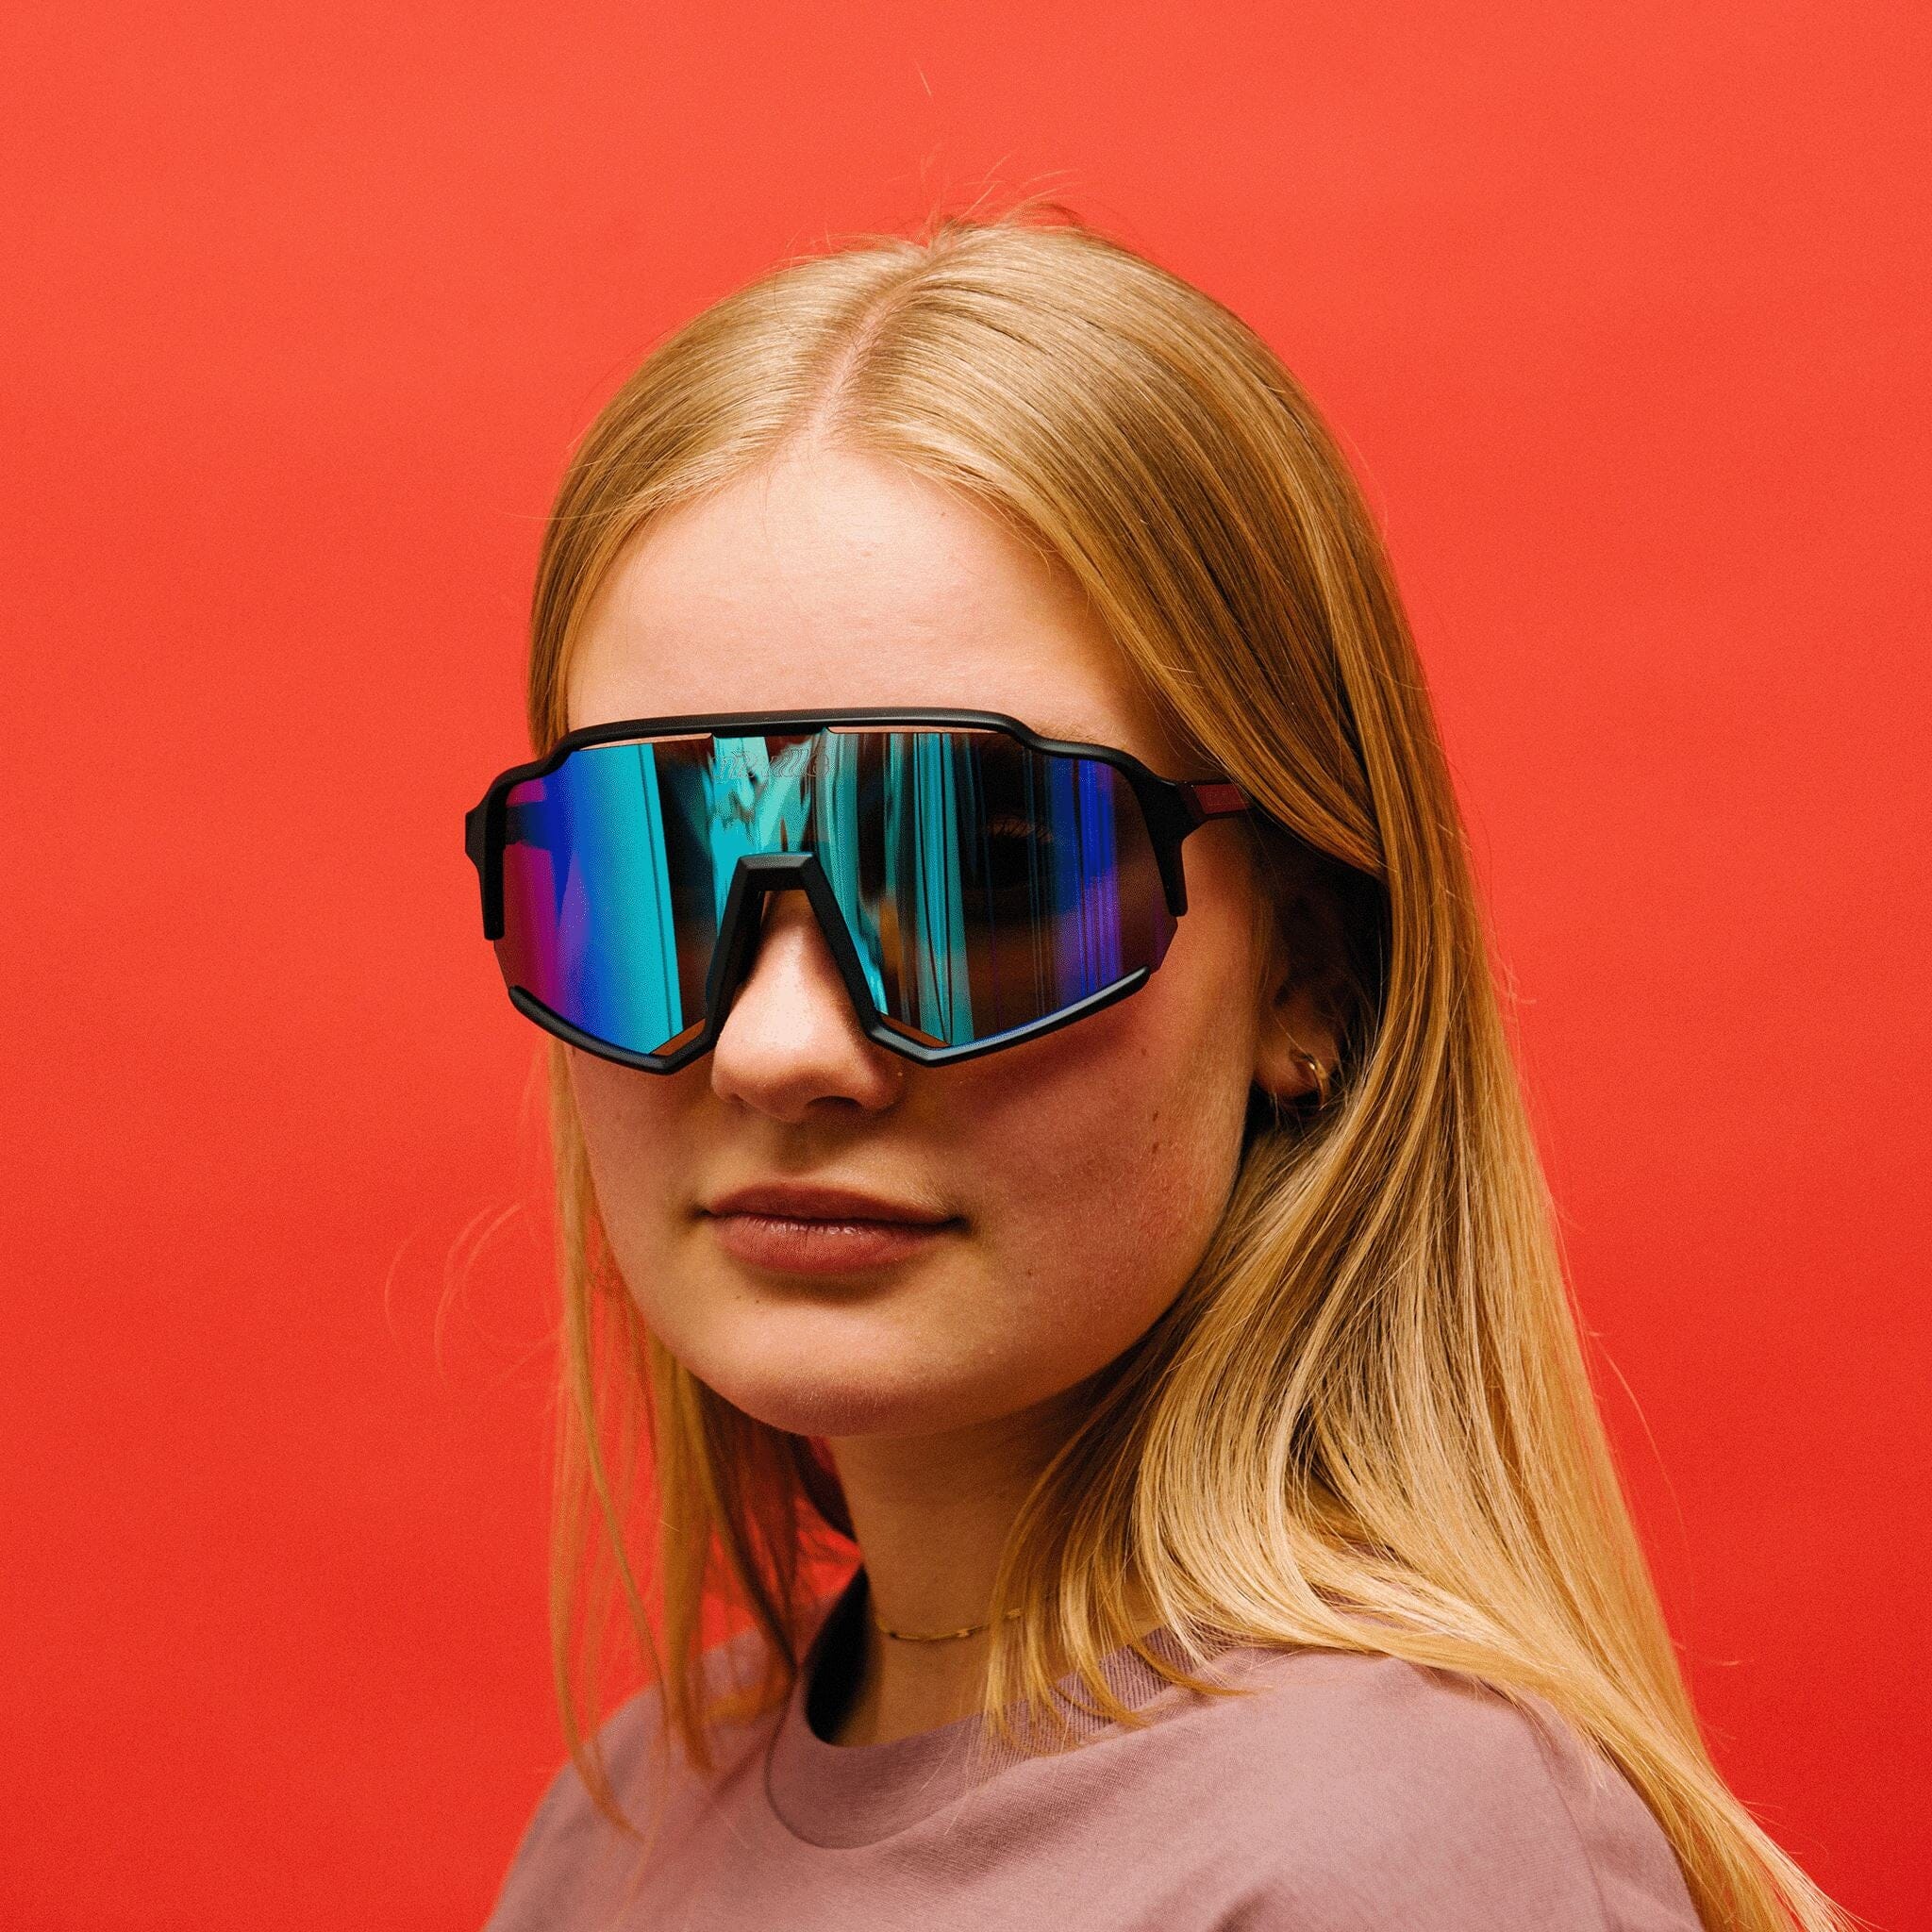 gib.rille-sonnenbrille-future-glasses-schnelle-brille-techno-brille-fahrradsonnebrille Sonnenbrille mit verlaufenden Gläsern - Sonnenbrille mit verspiegelten Gläsern, Sonnenbrille mit farbigen Gläsern Rennrad Brille